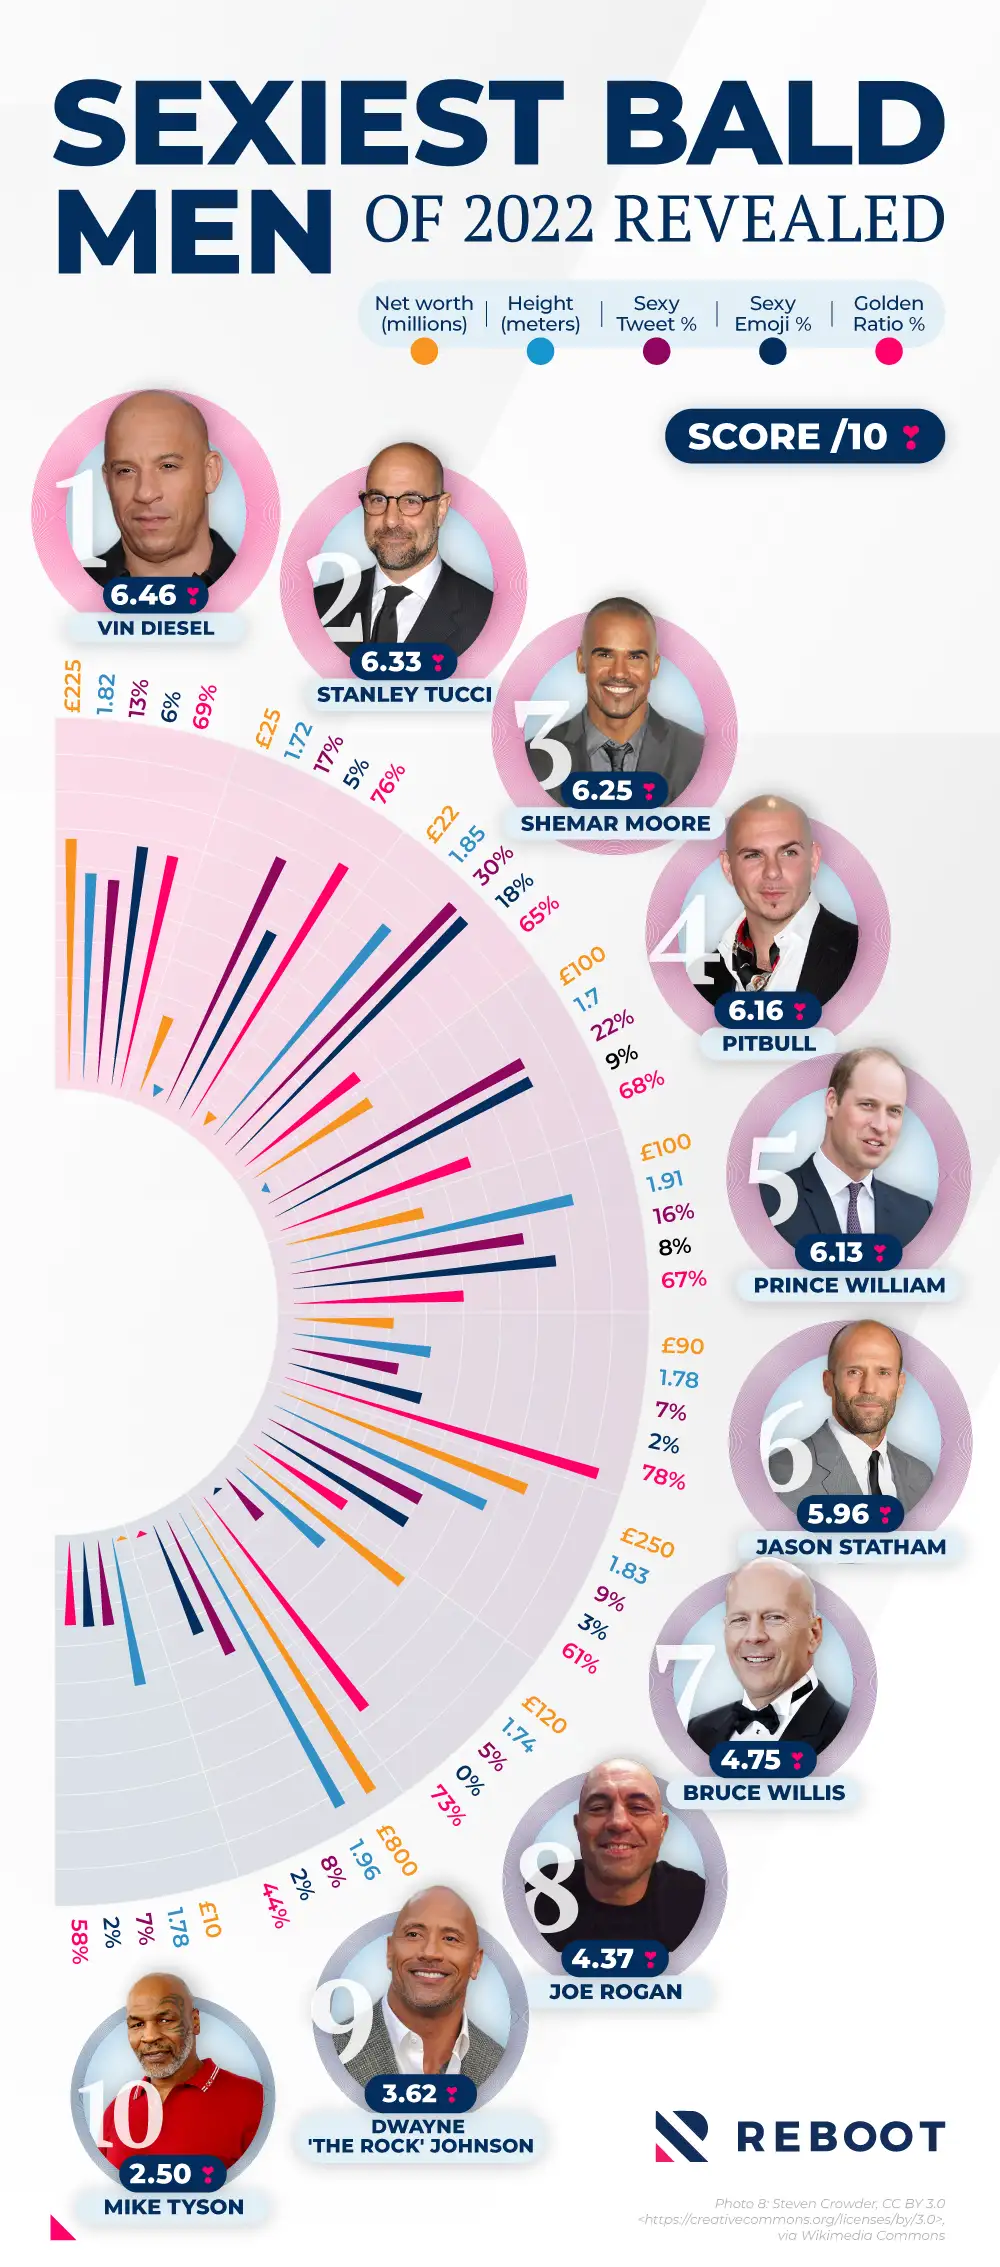 The top 10 sexiest bald men